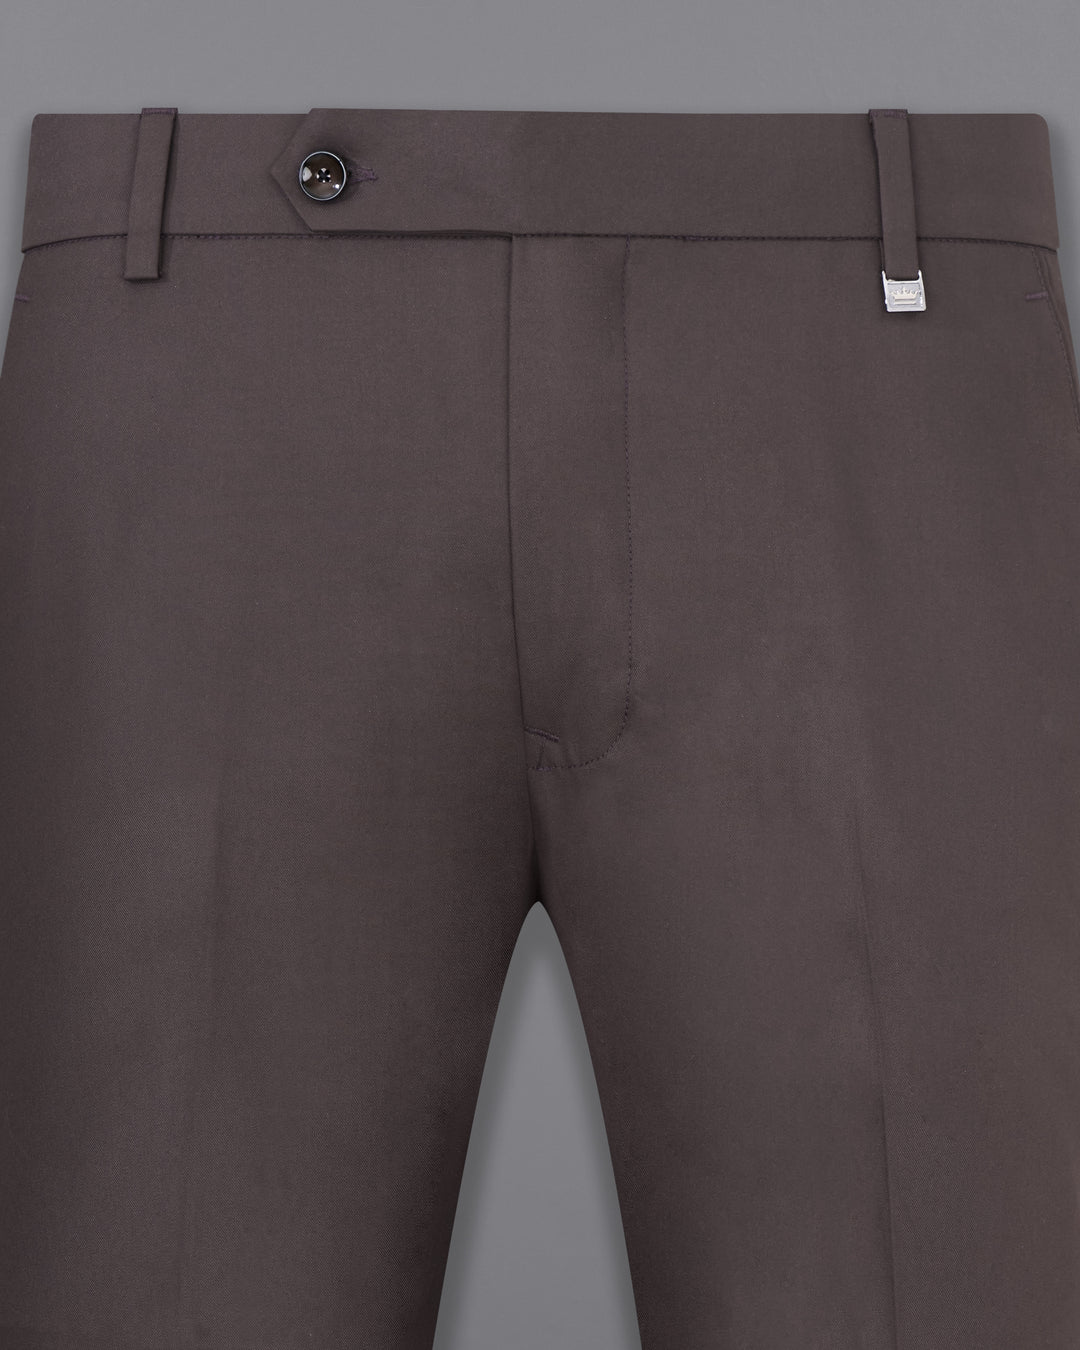 Mati Black Double Buttoned Shirt & Harem Pant Set (2 PCS)